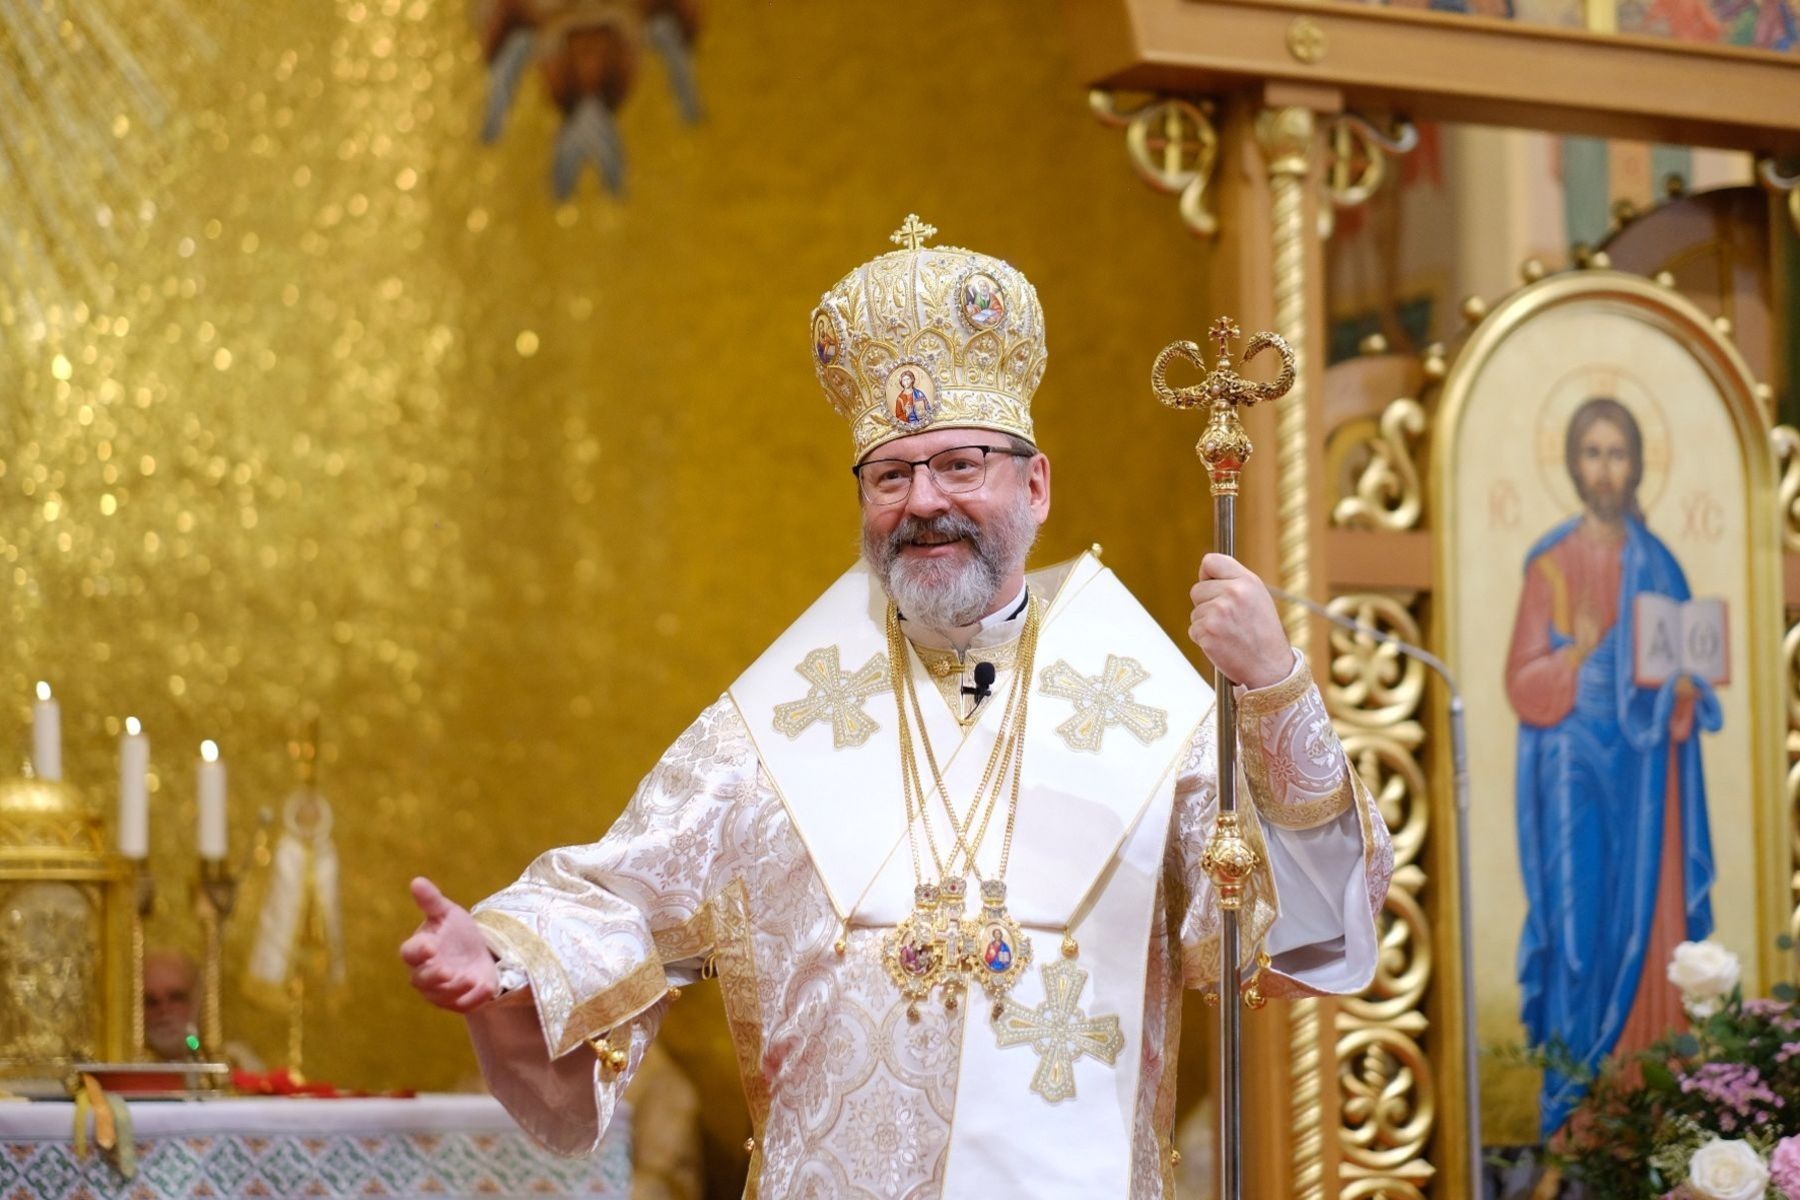 Predigt Seiner Seligkeit Sviatoslav in München anlässlich des 65-jährigen Jubiläums des Apostolischen Exarchats für die Ukrainer in Deutschland und Skandinavien